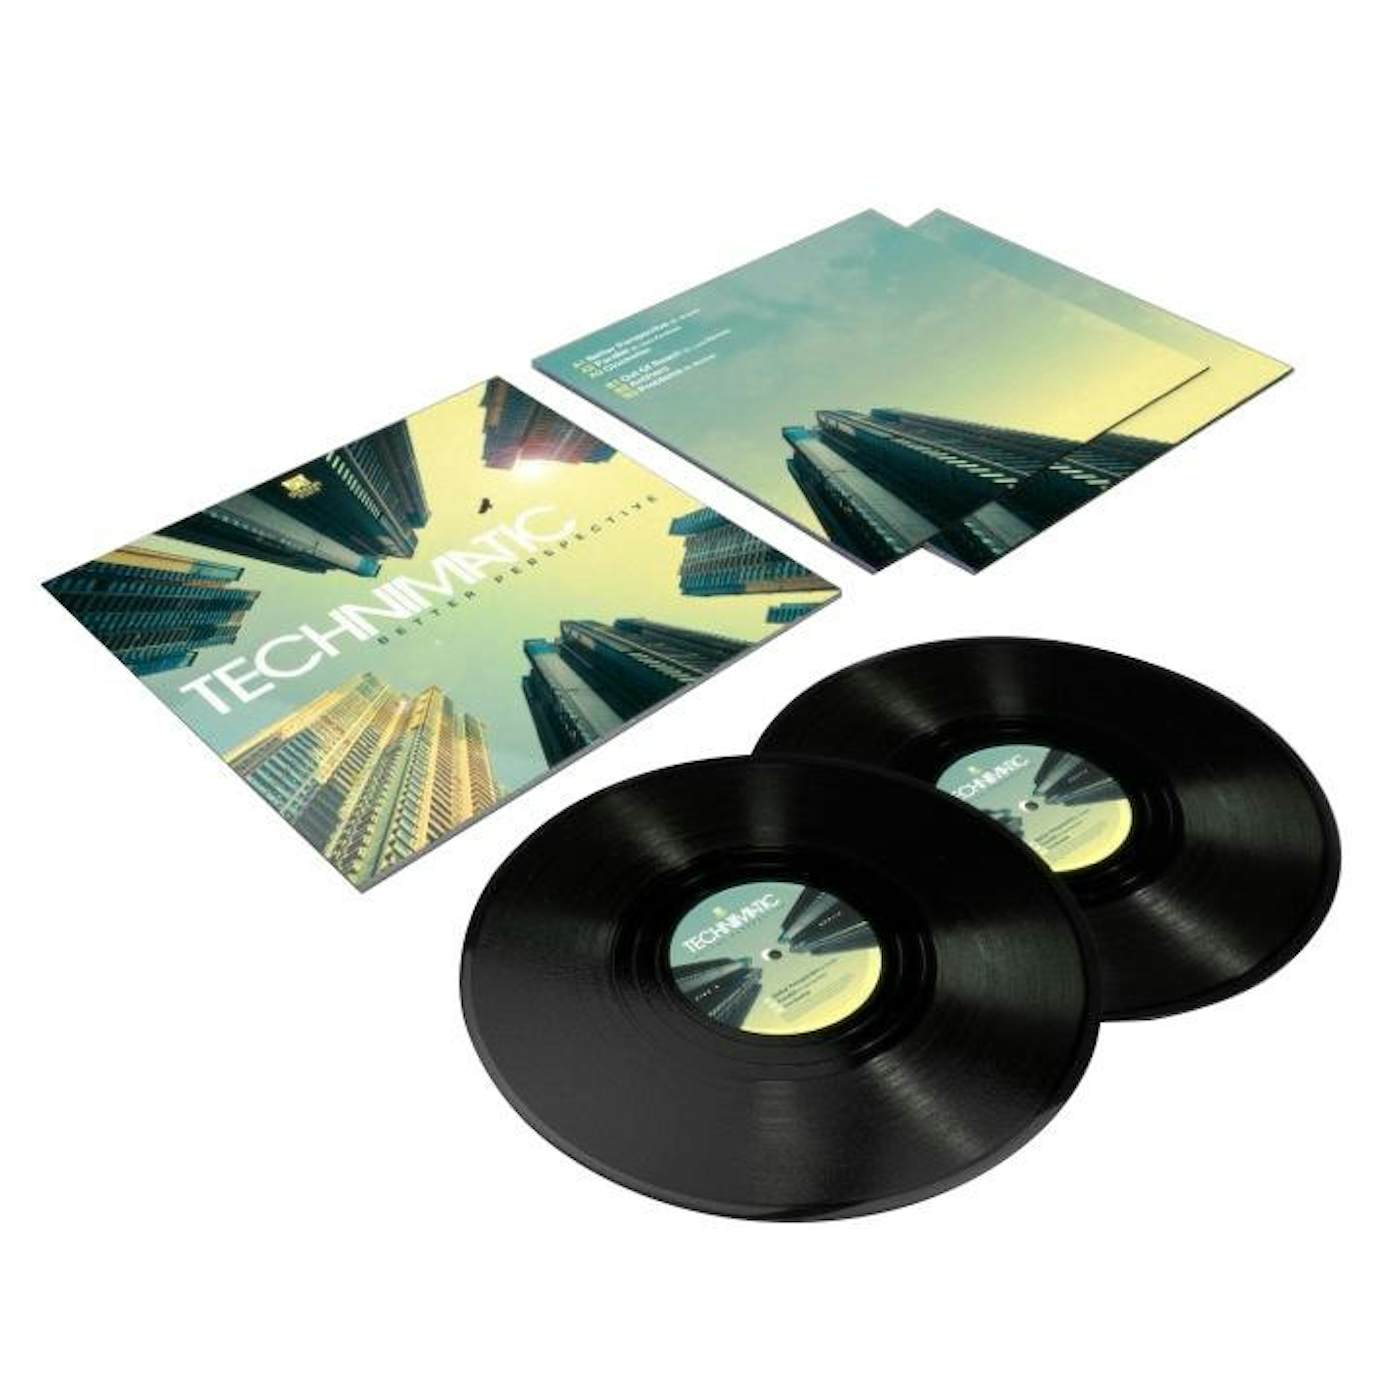 Technimatic - Better Perspective LP (Vinyl)